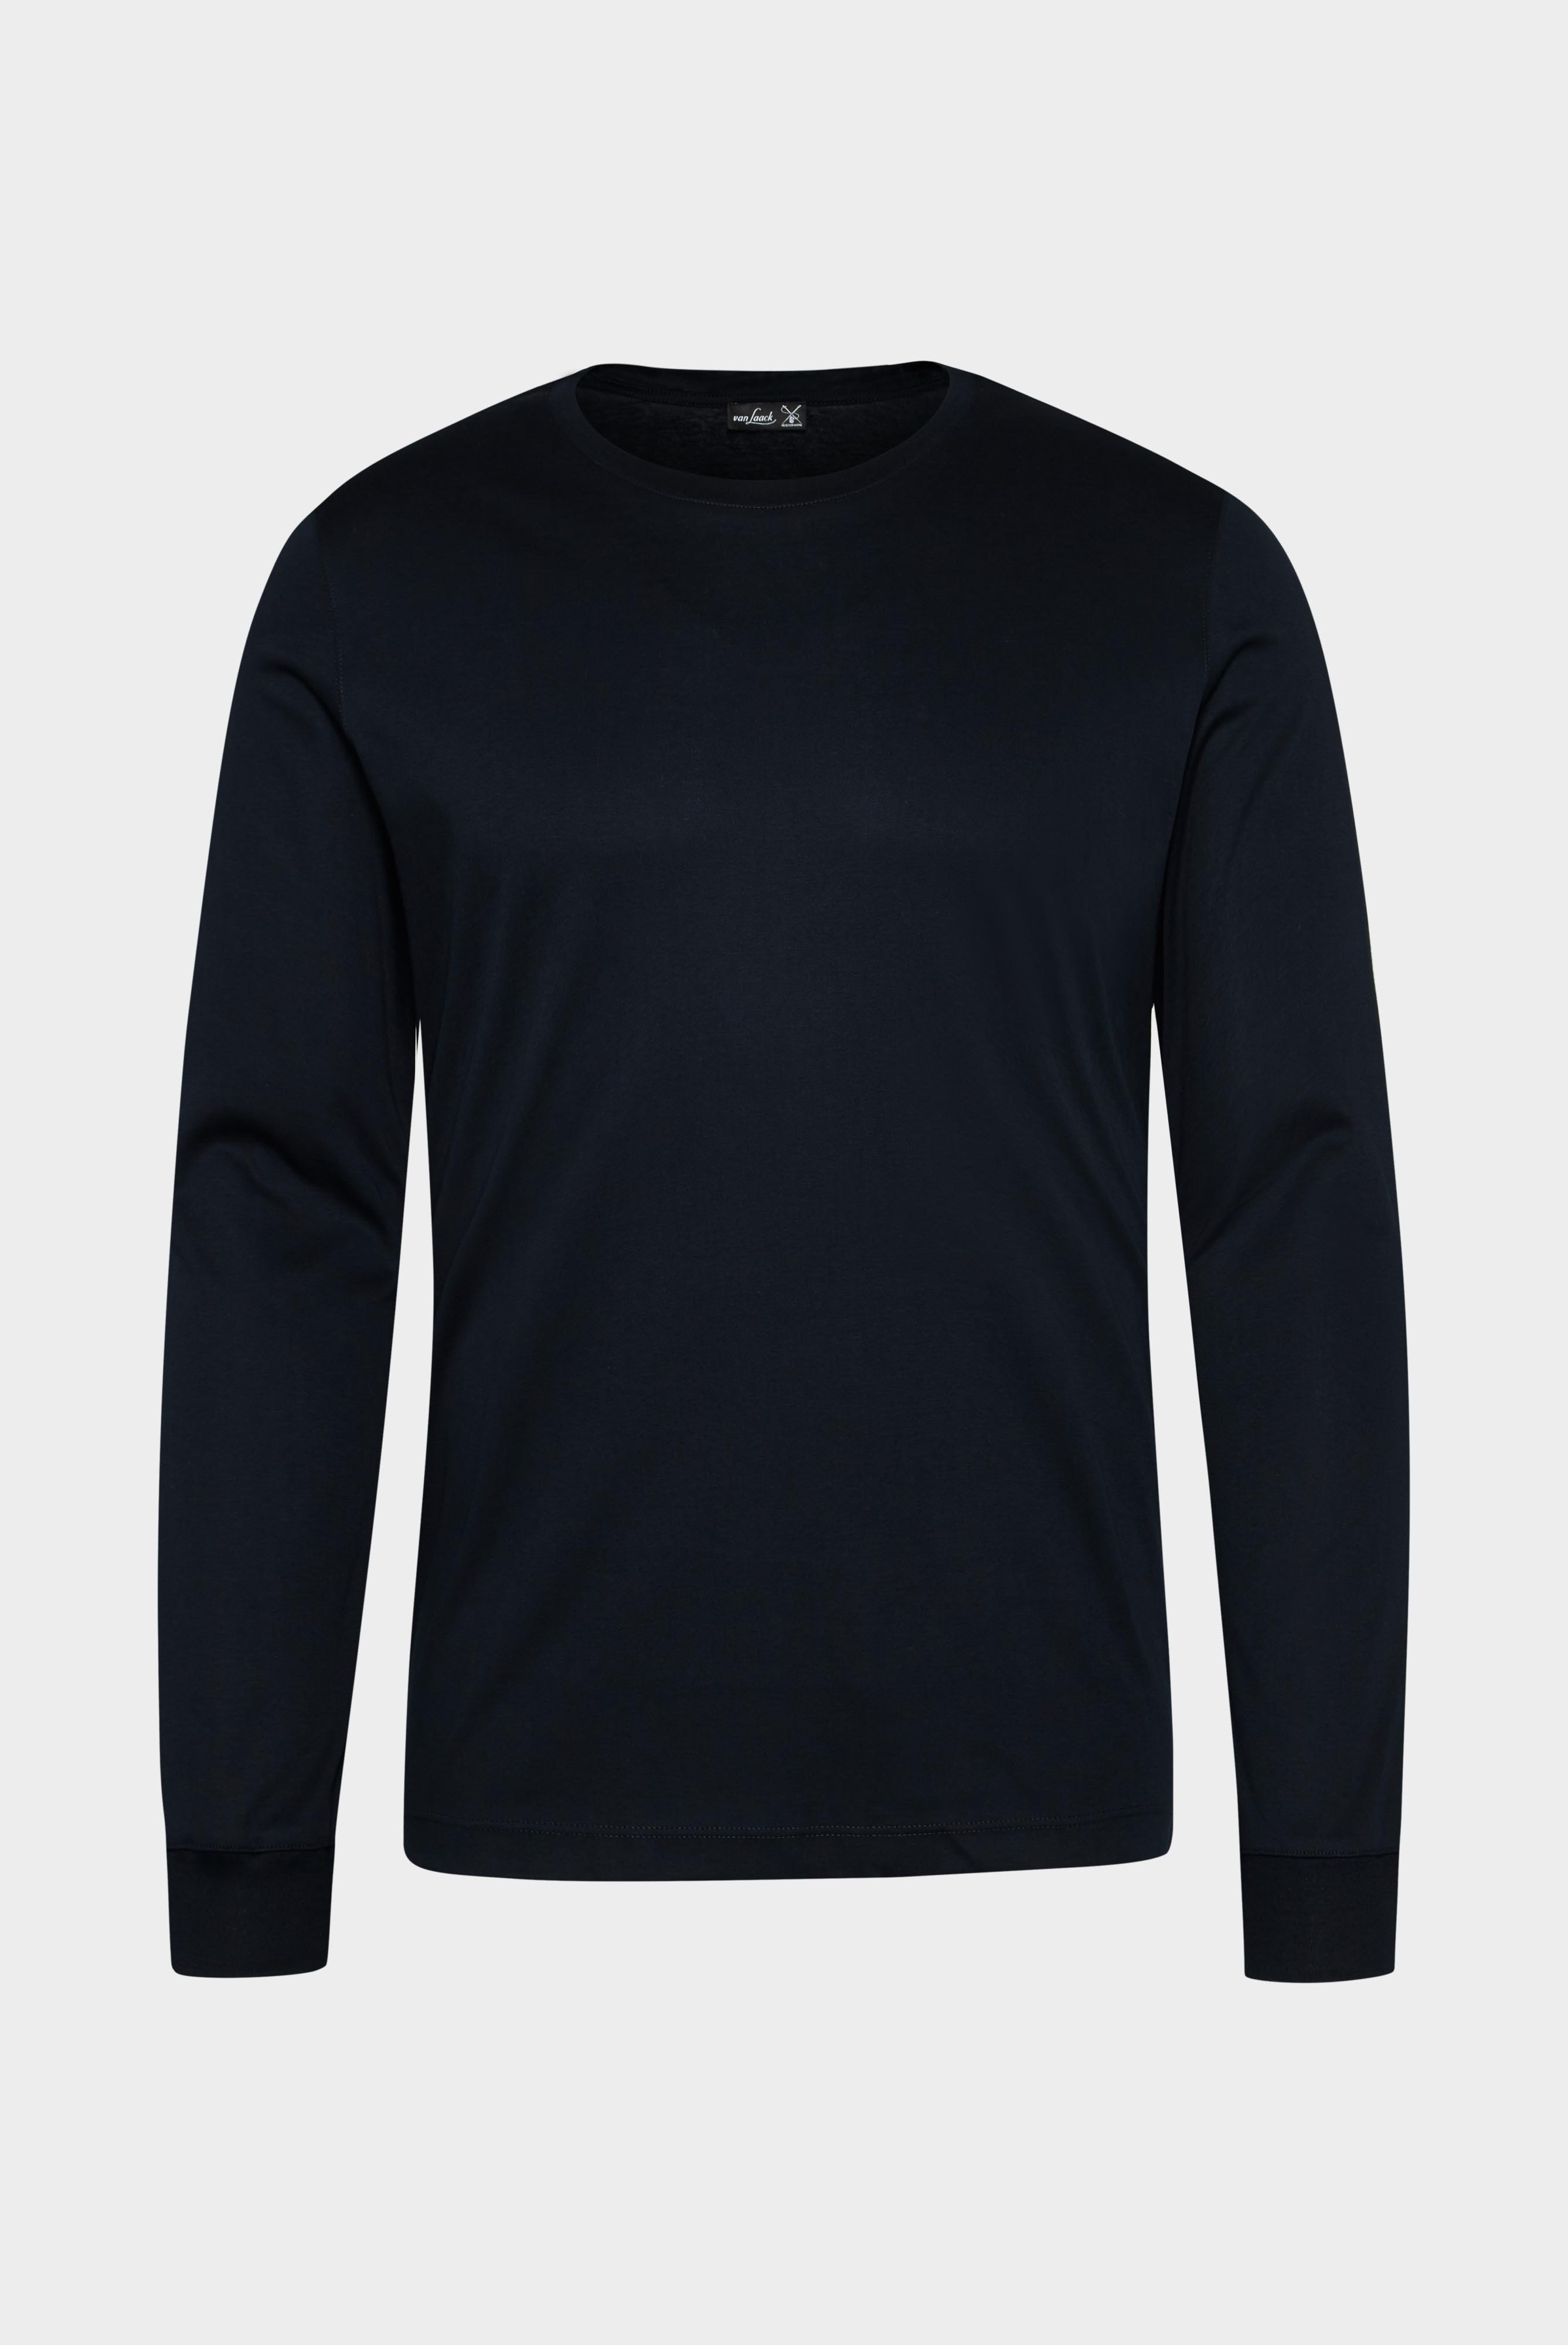 T-Shirts+Langarm Jersey T-Shirt mit Rundhals Slim Fit+20.1718.UX.180031.790.X4L